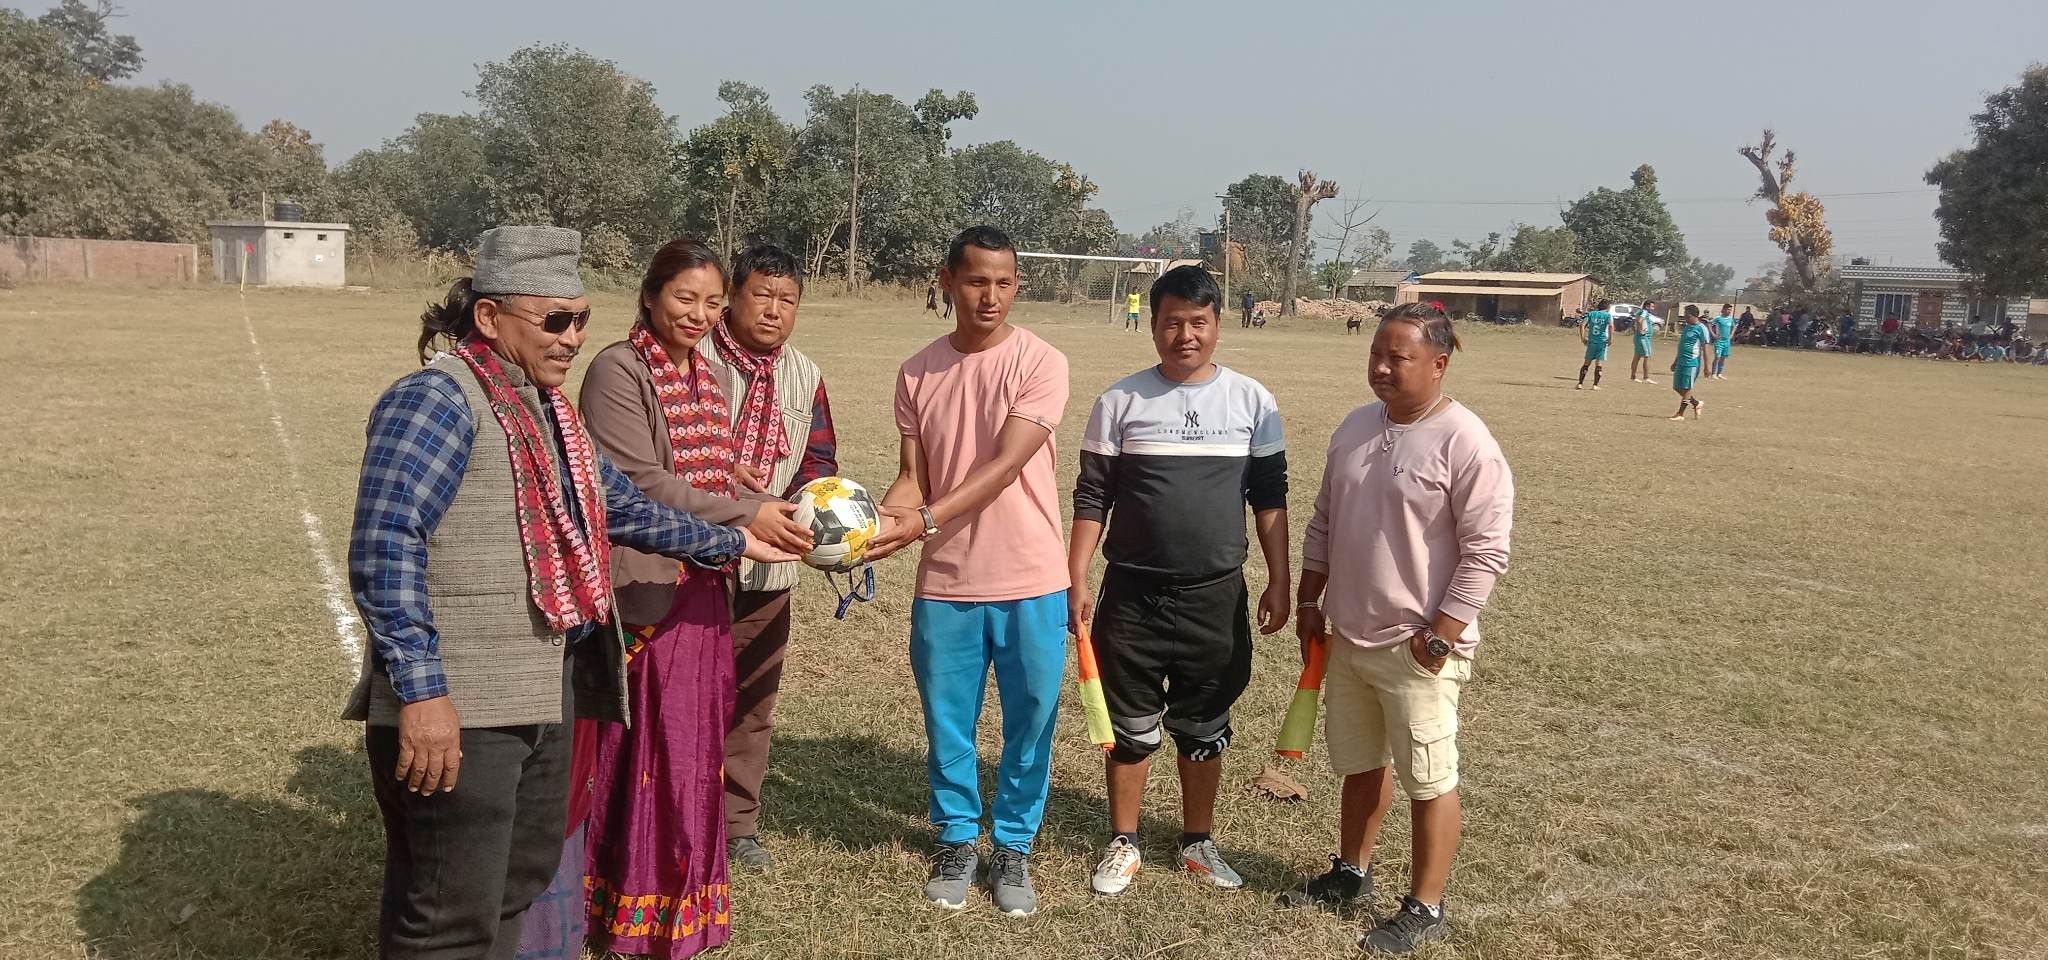 कञ्चनमा ३५ बर्ष भन्दा माथी उमेर समूह बिच फुटवल प्रतियोगिता